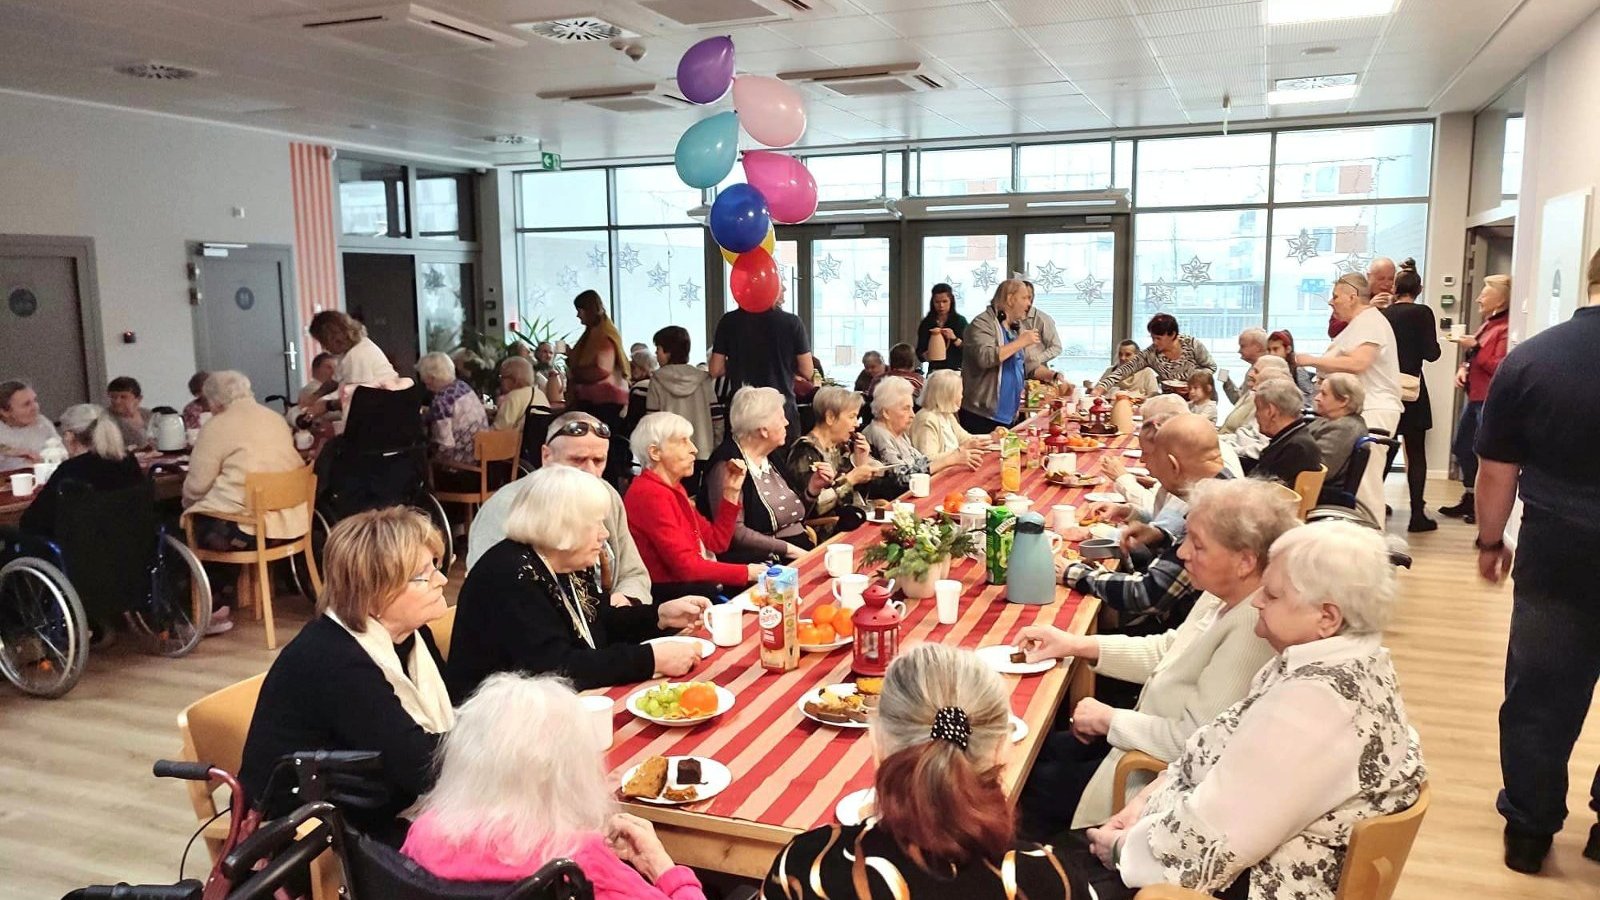 Na zdjęciu stół zastawiony jedzeniem, przy którym siedzą starsze osoby